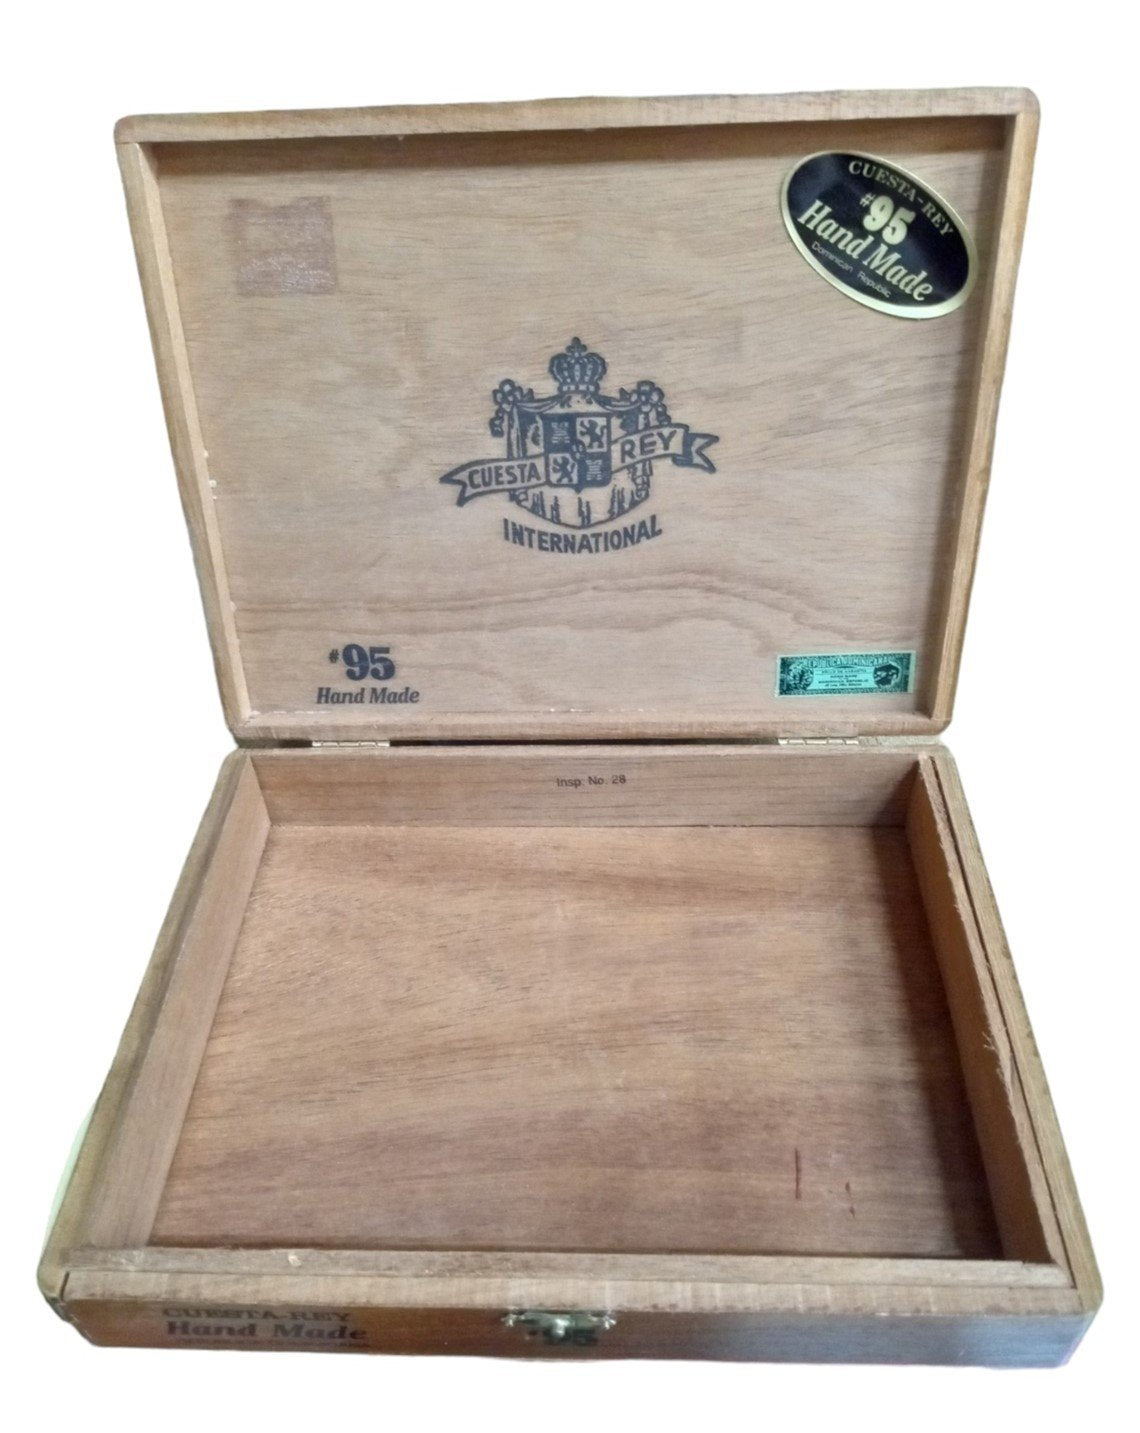 Cuesta Rey Wooden Cigar Box Vintage Collectible Decorative Storage Tobacciana